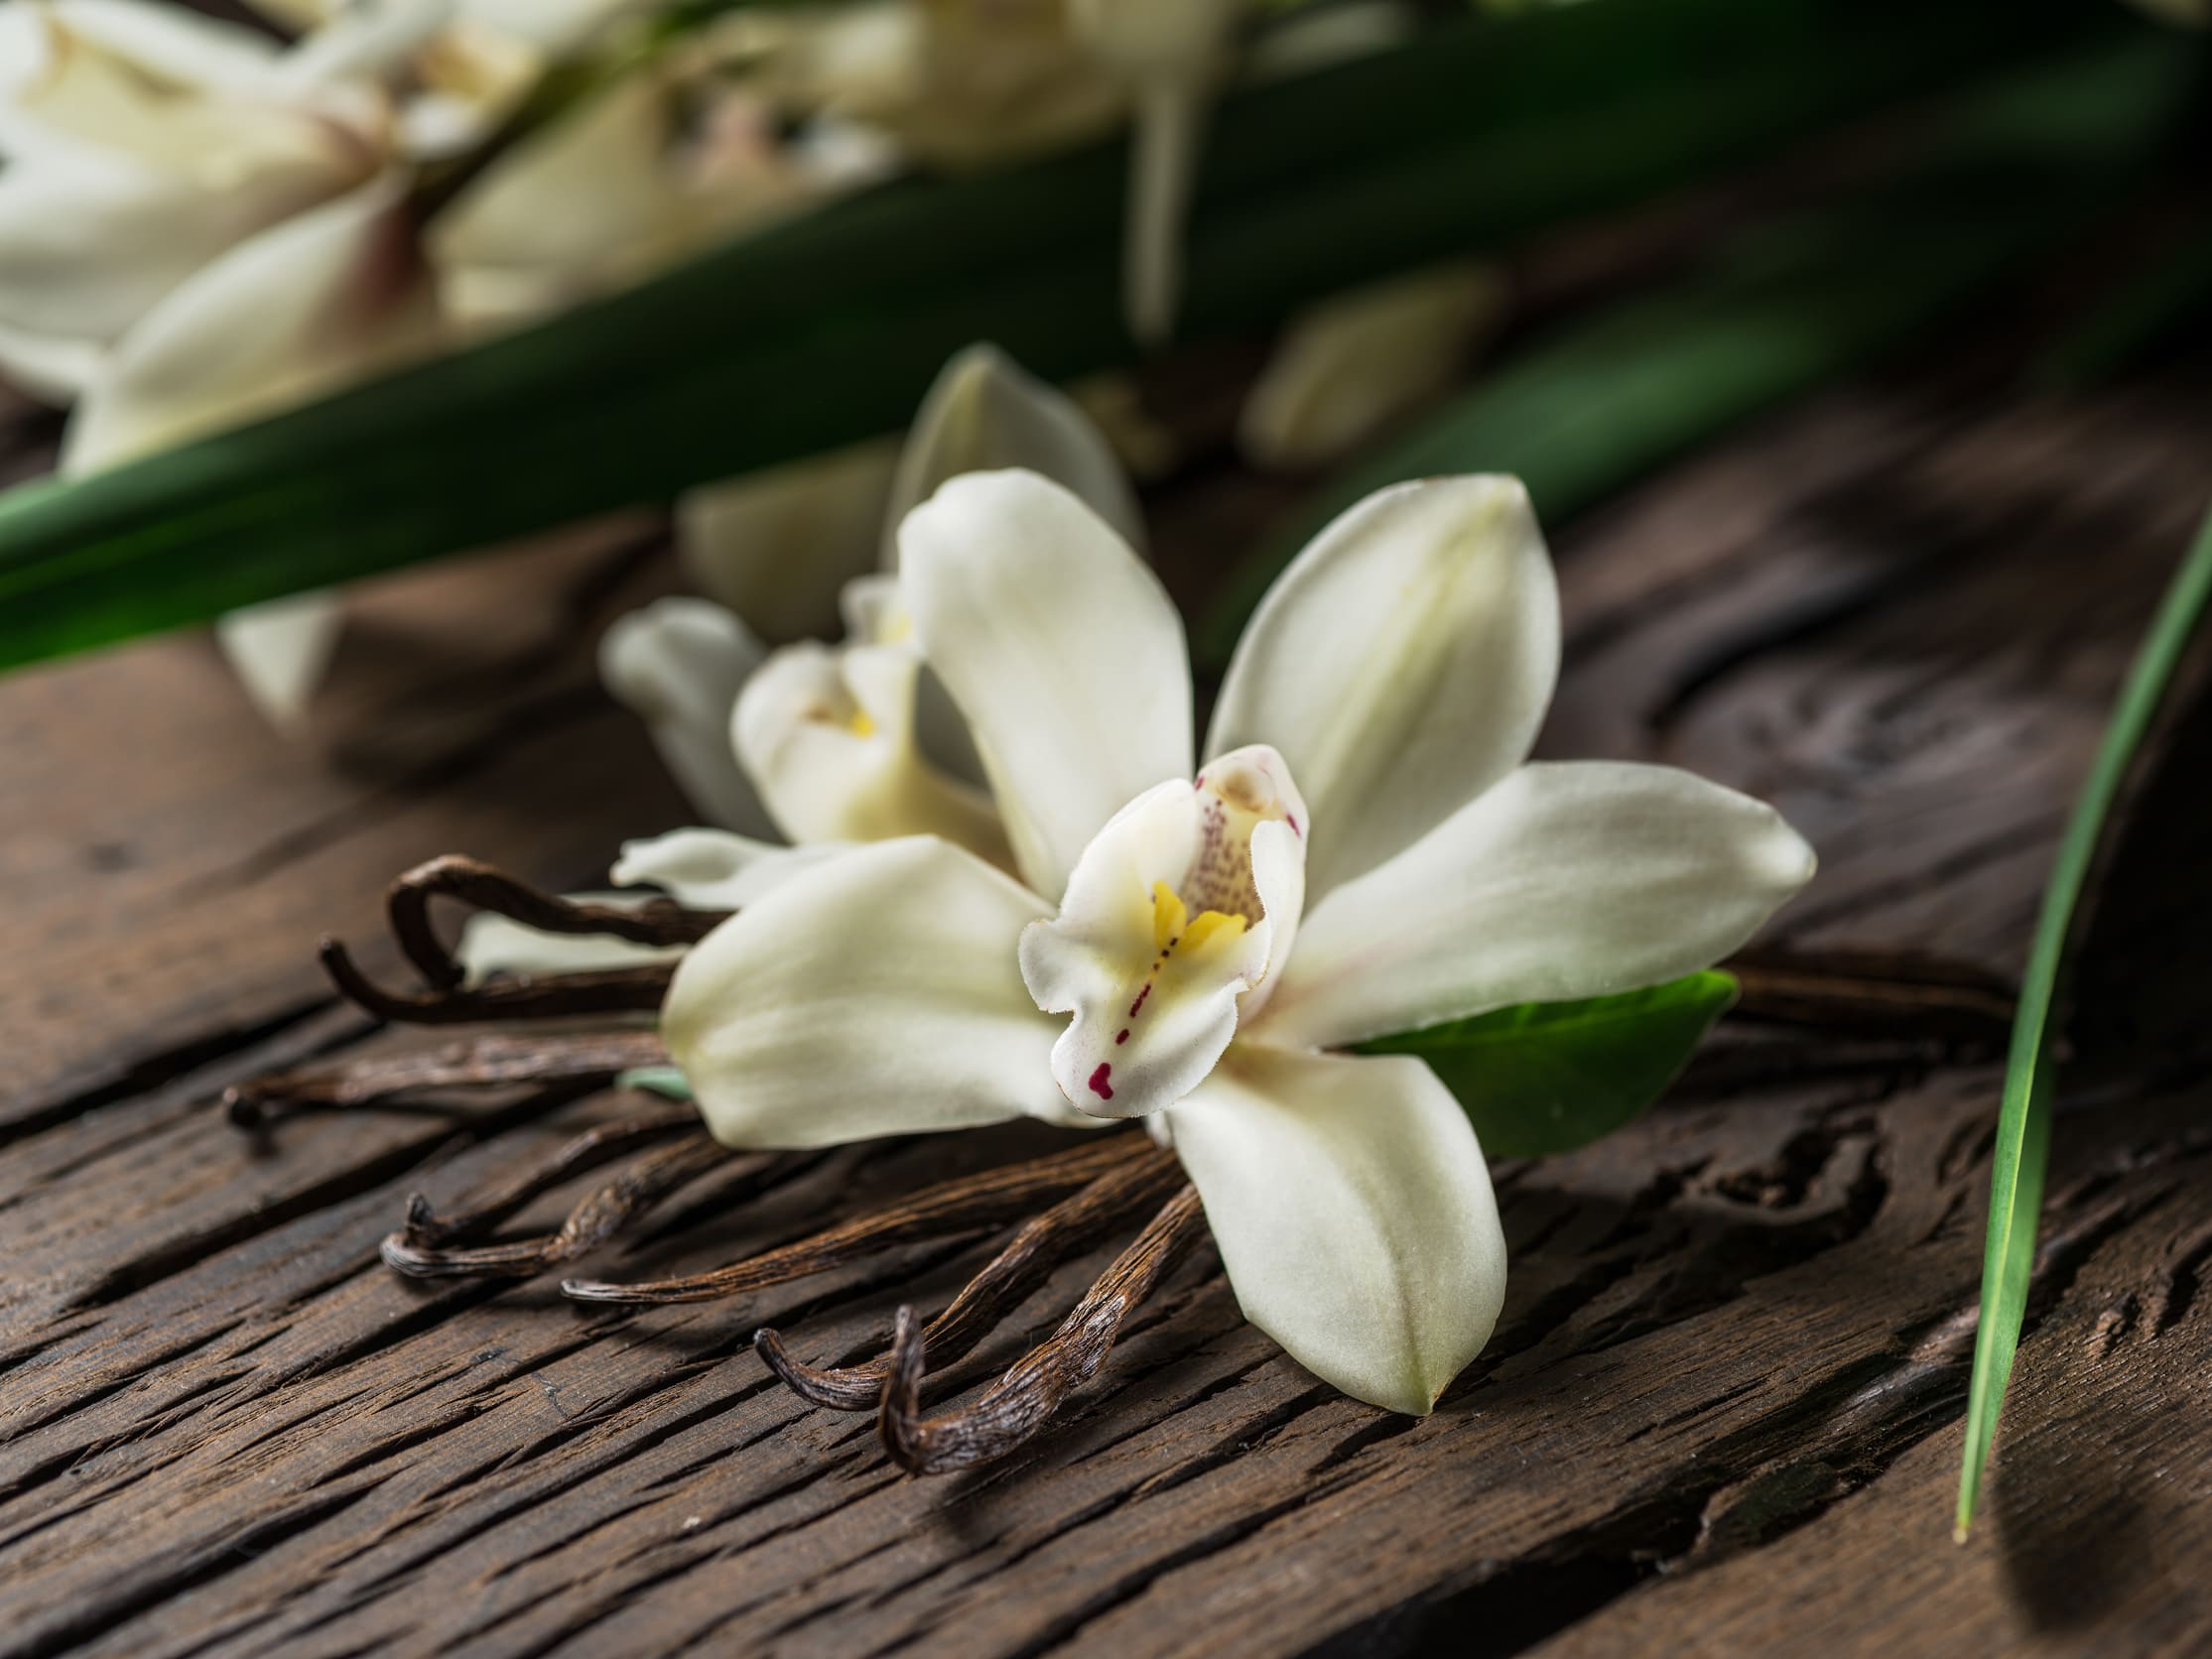 Starwest Botanicals Essential Oil - Vanilla Oleoresin - 1/3 oz (10ml)